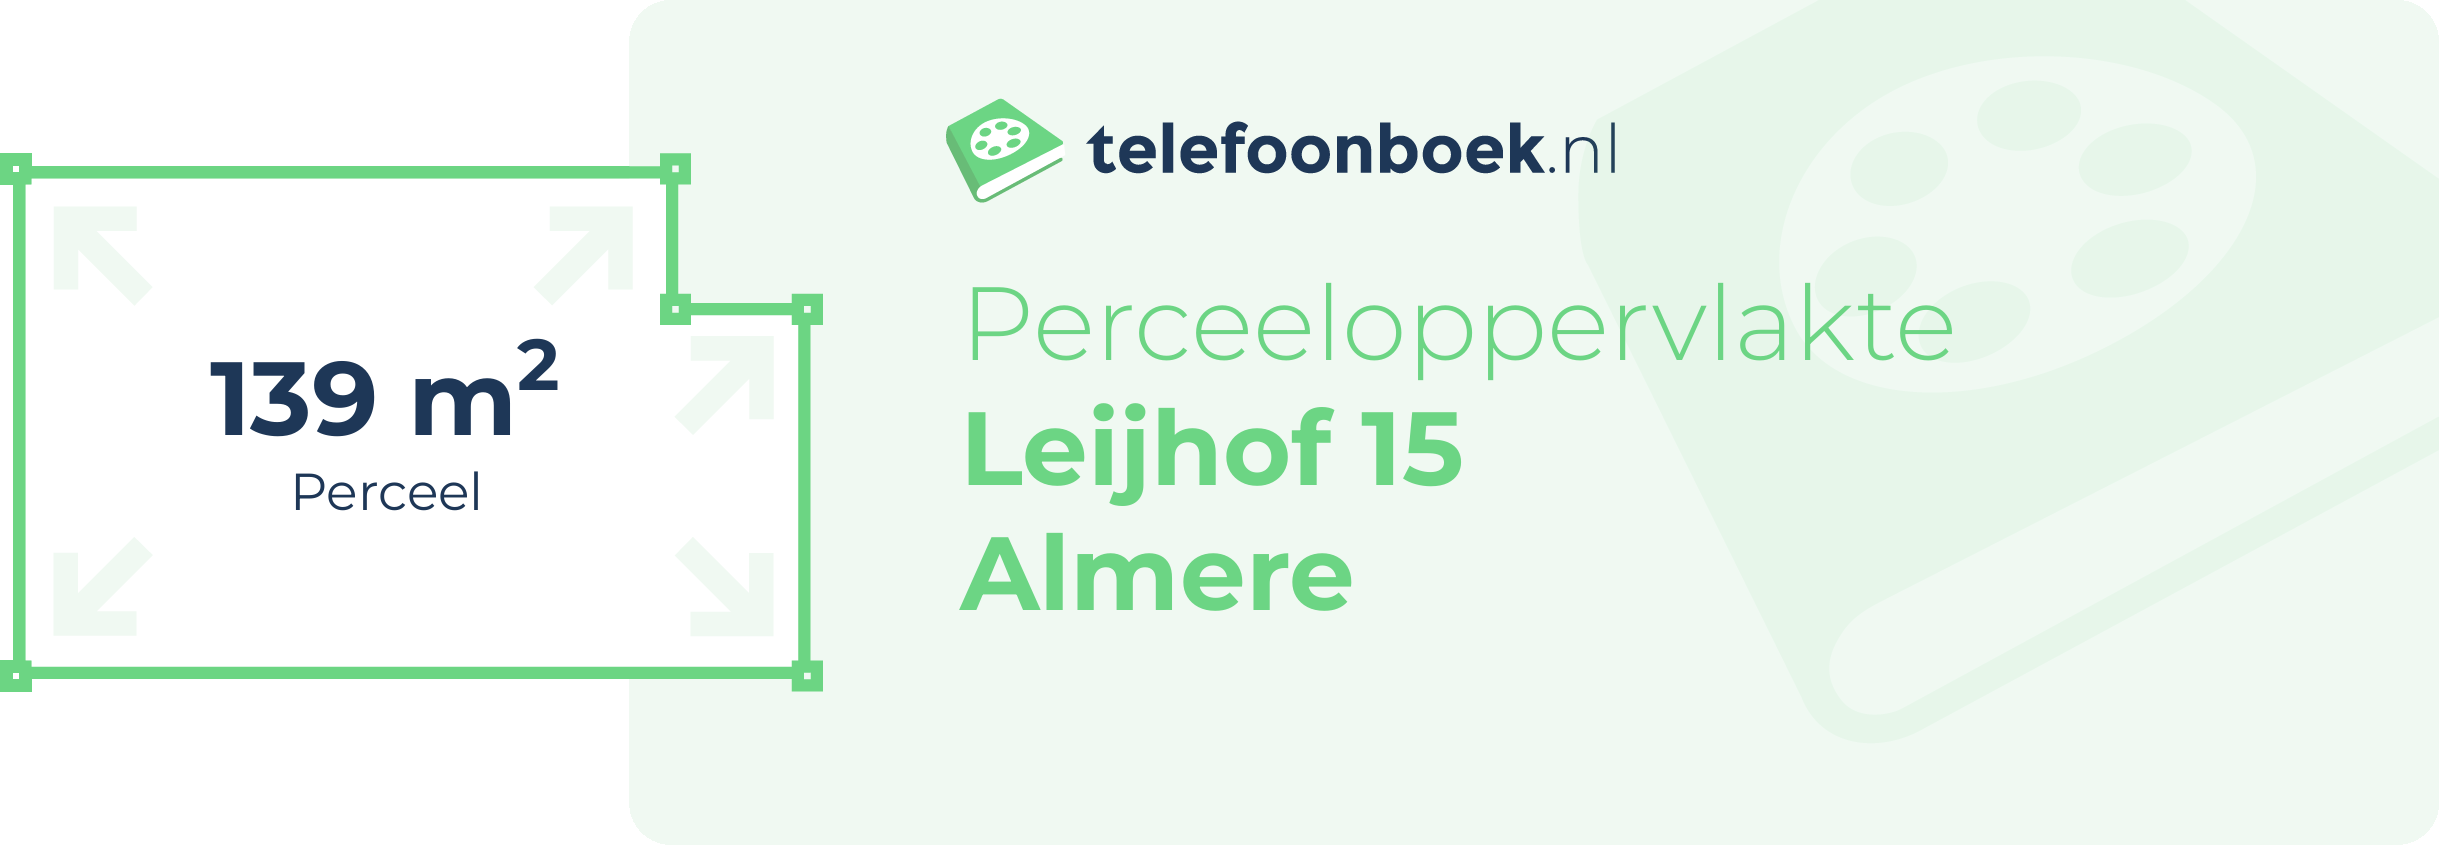 Perceeloppervlakte Leijhof 15 Almere